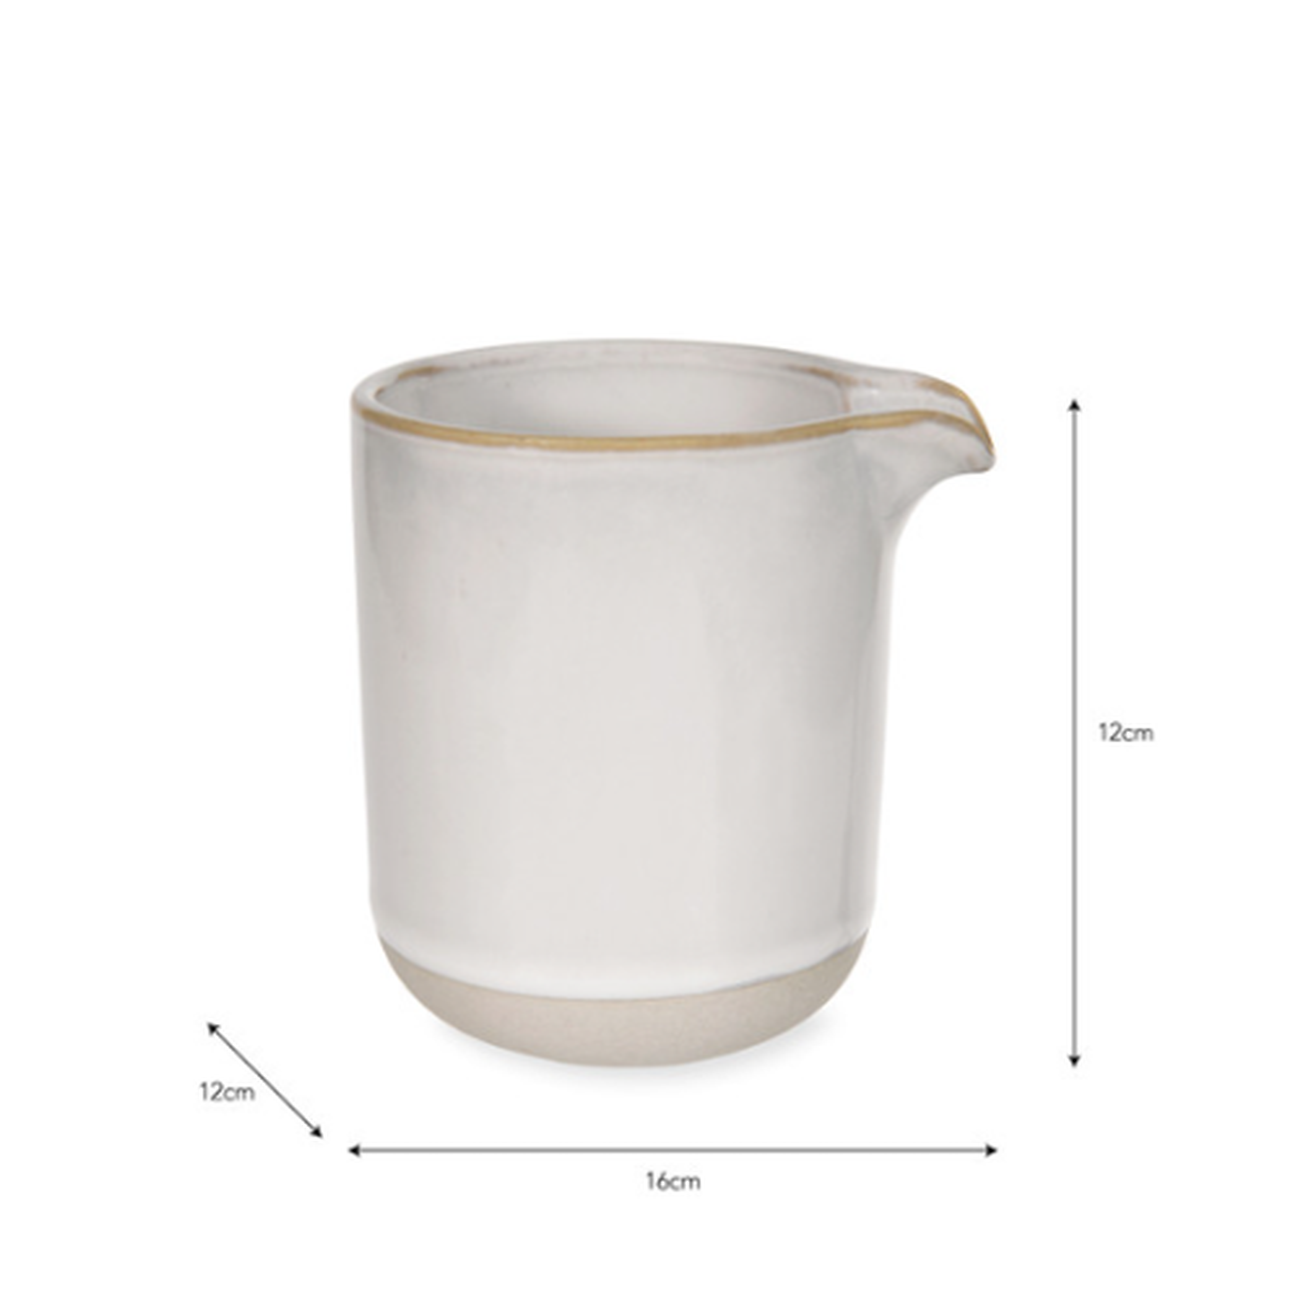 garden-trading-holwell-milk-jug-pitcher - Garden Trading Holwell Ceramic Milk Jug